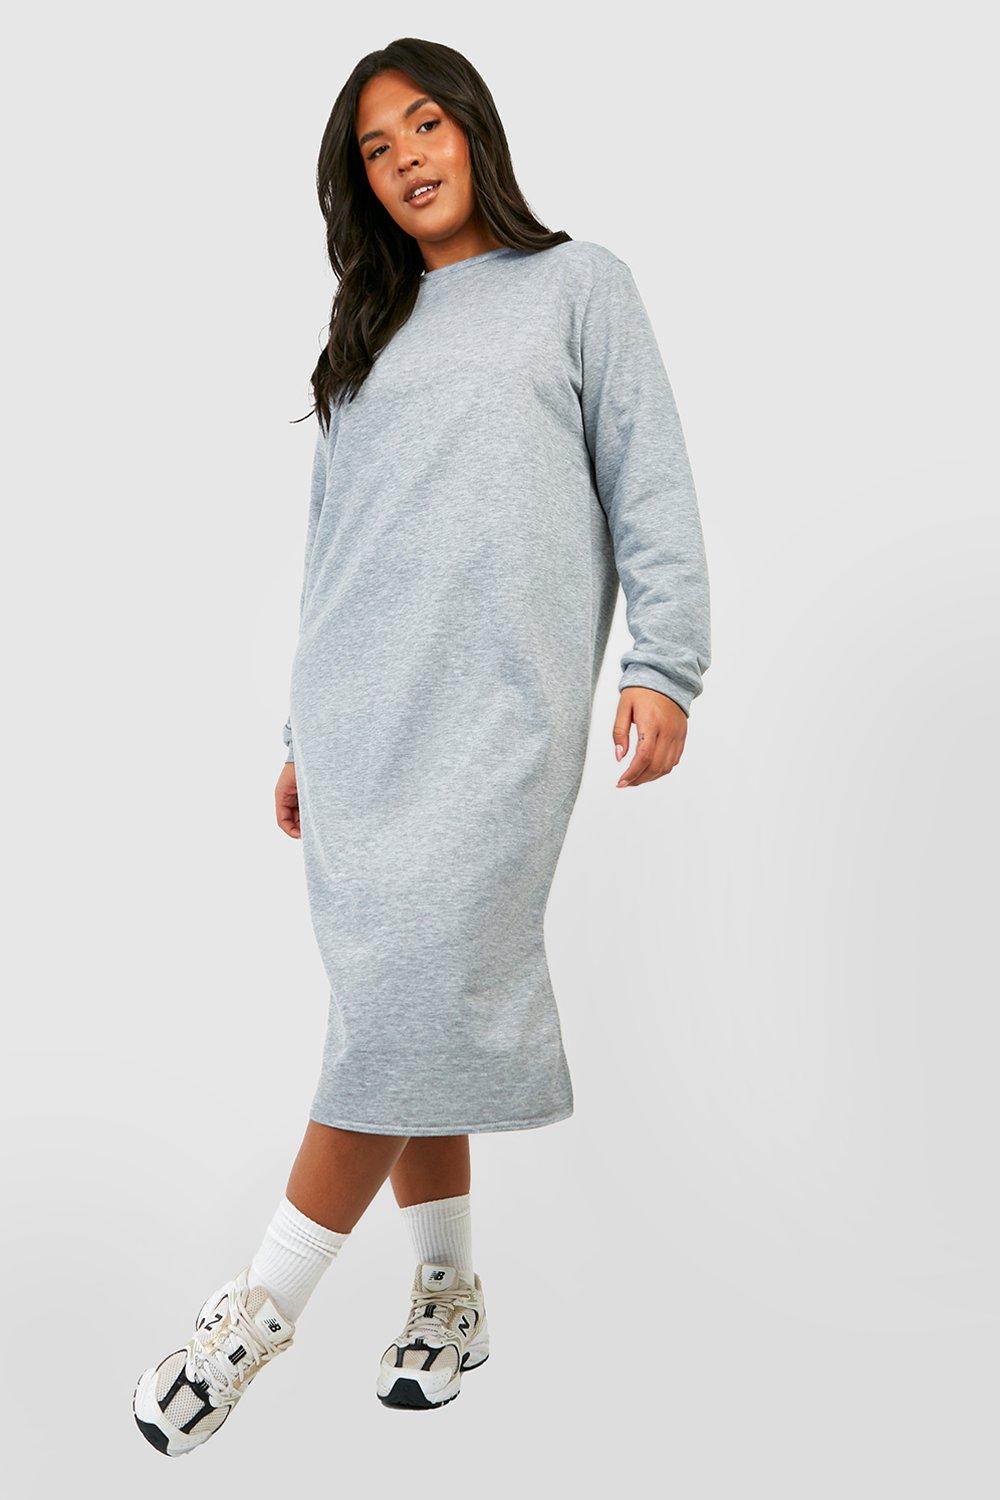 Plus - Oversized Lång Sweatshirtklänning Med Slits, Grey